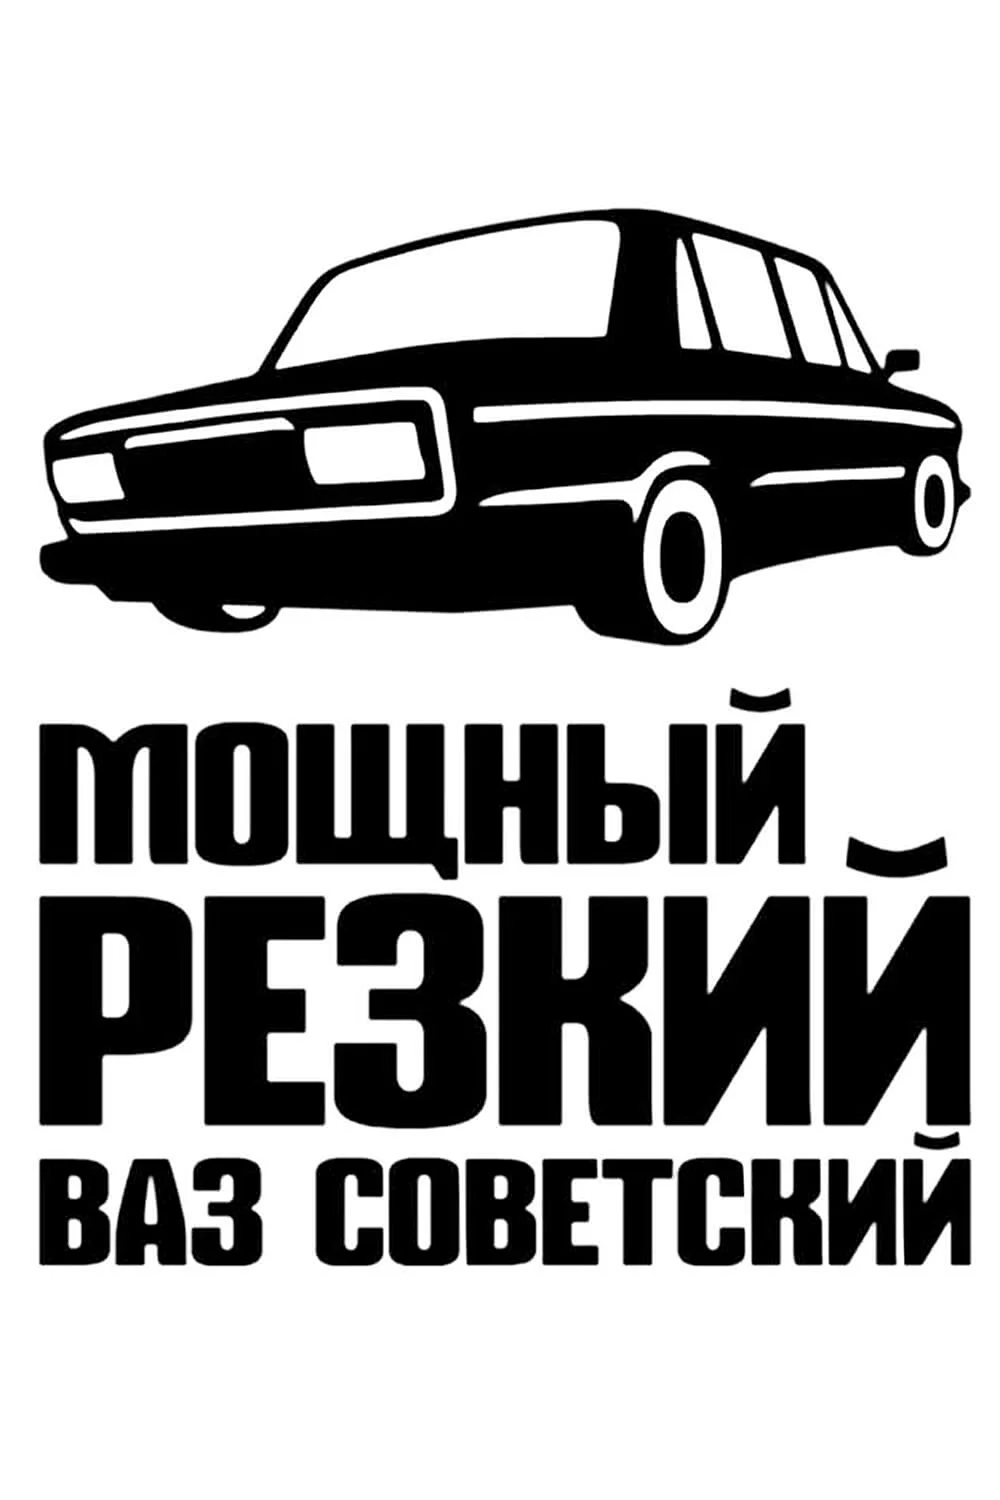 Наклейки на авто на заказ в Москве